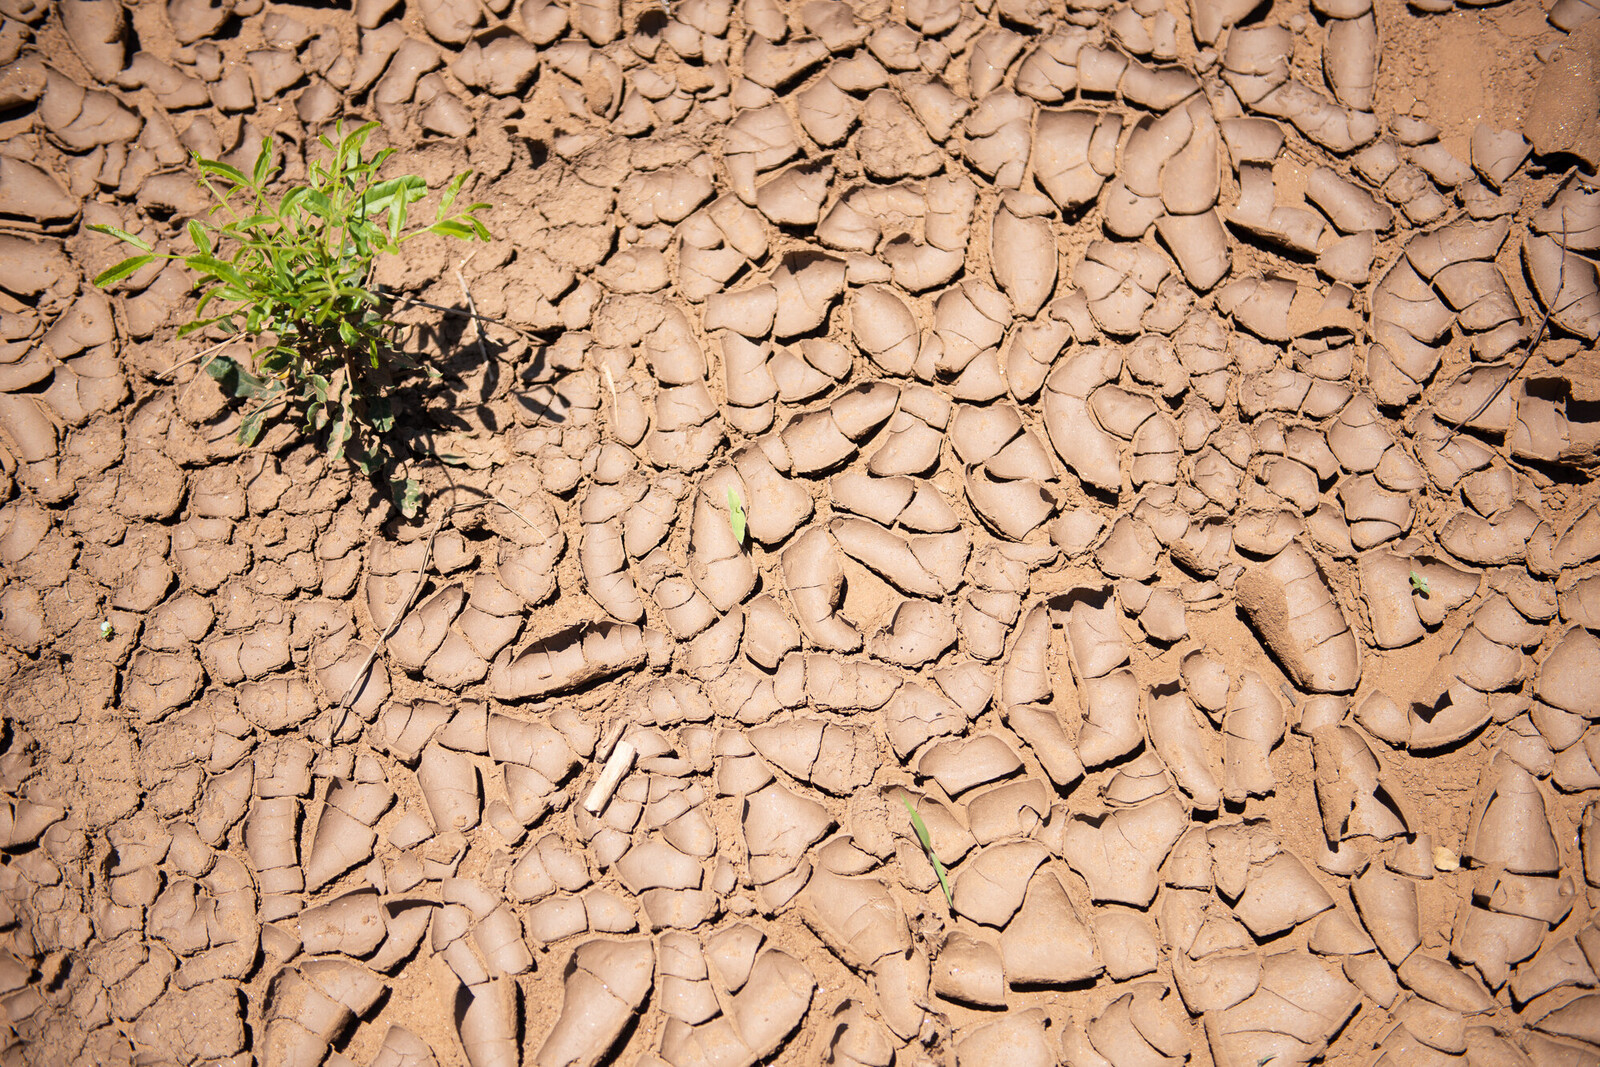 Dürre und Trockenheit als Auswirkung des Klimawandels in Mosambik